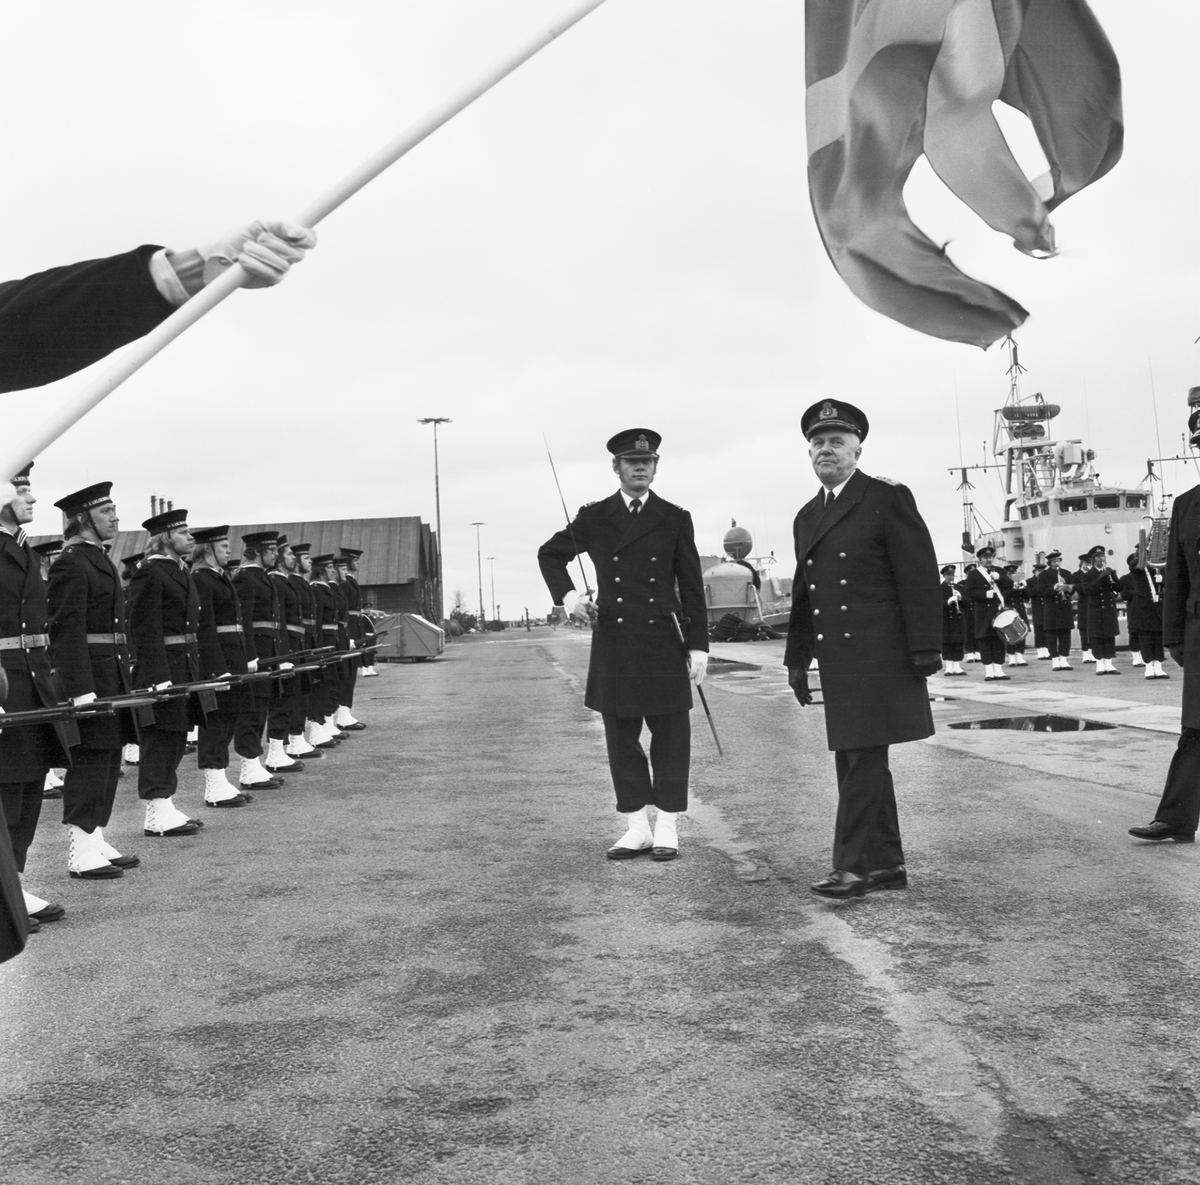 Bilden visar den före detta marinchefen, amiral Åke Lindemalm som står fram för en rad soldater som har tagit uppställning för sjösättningsceremonien för torpedbåten Varberg.